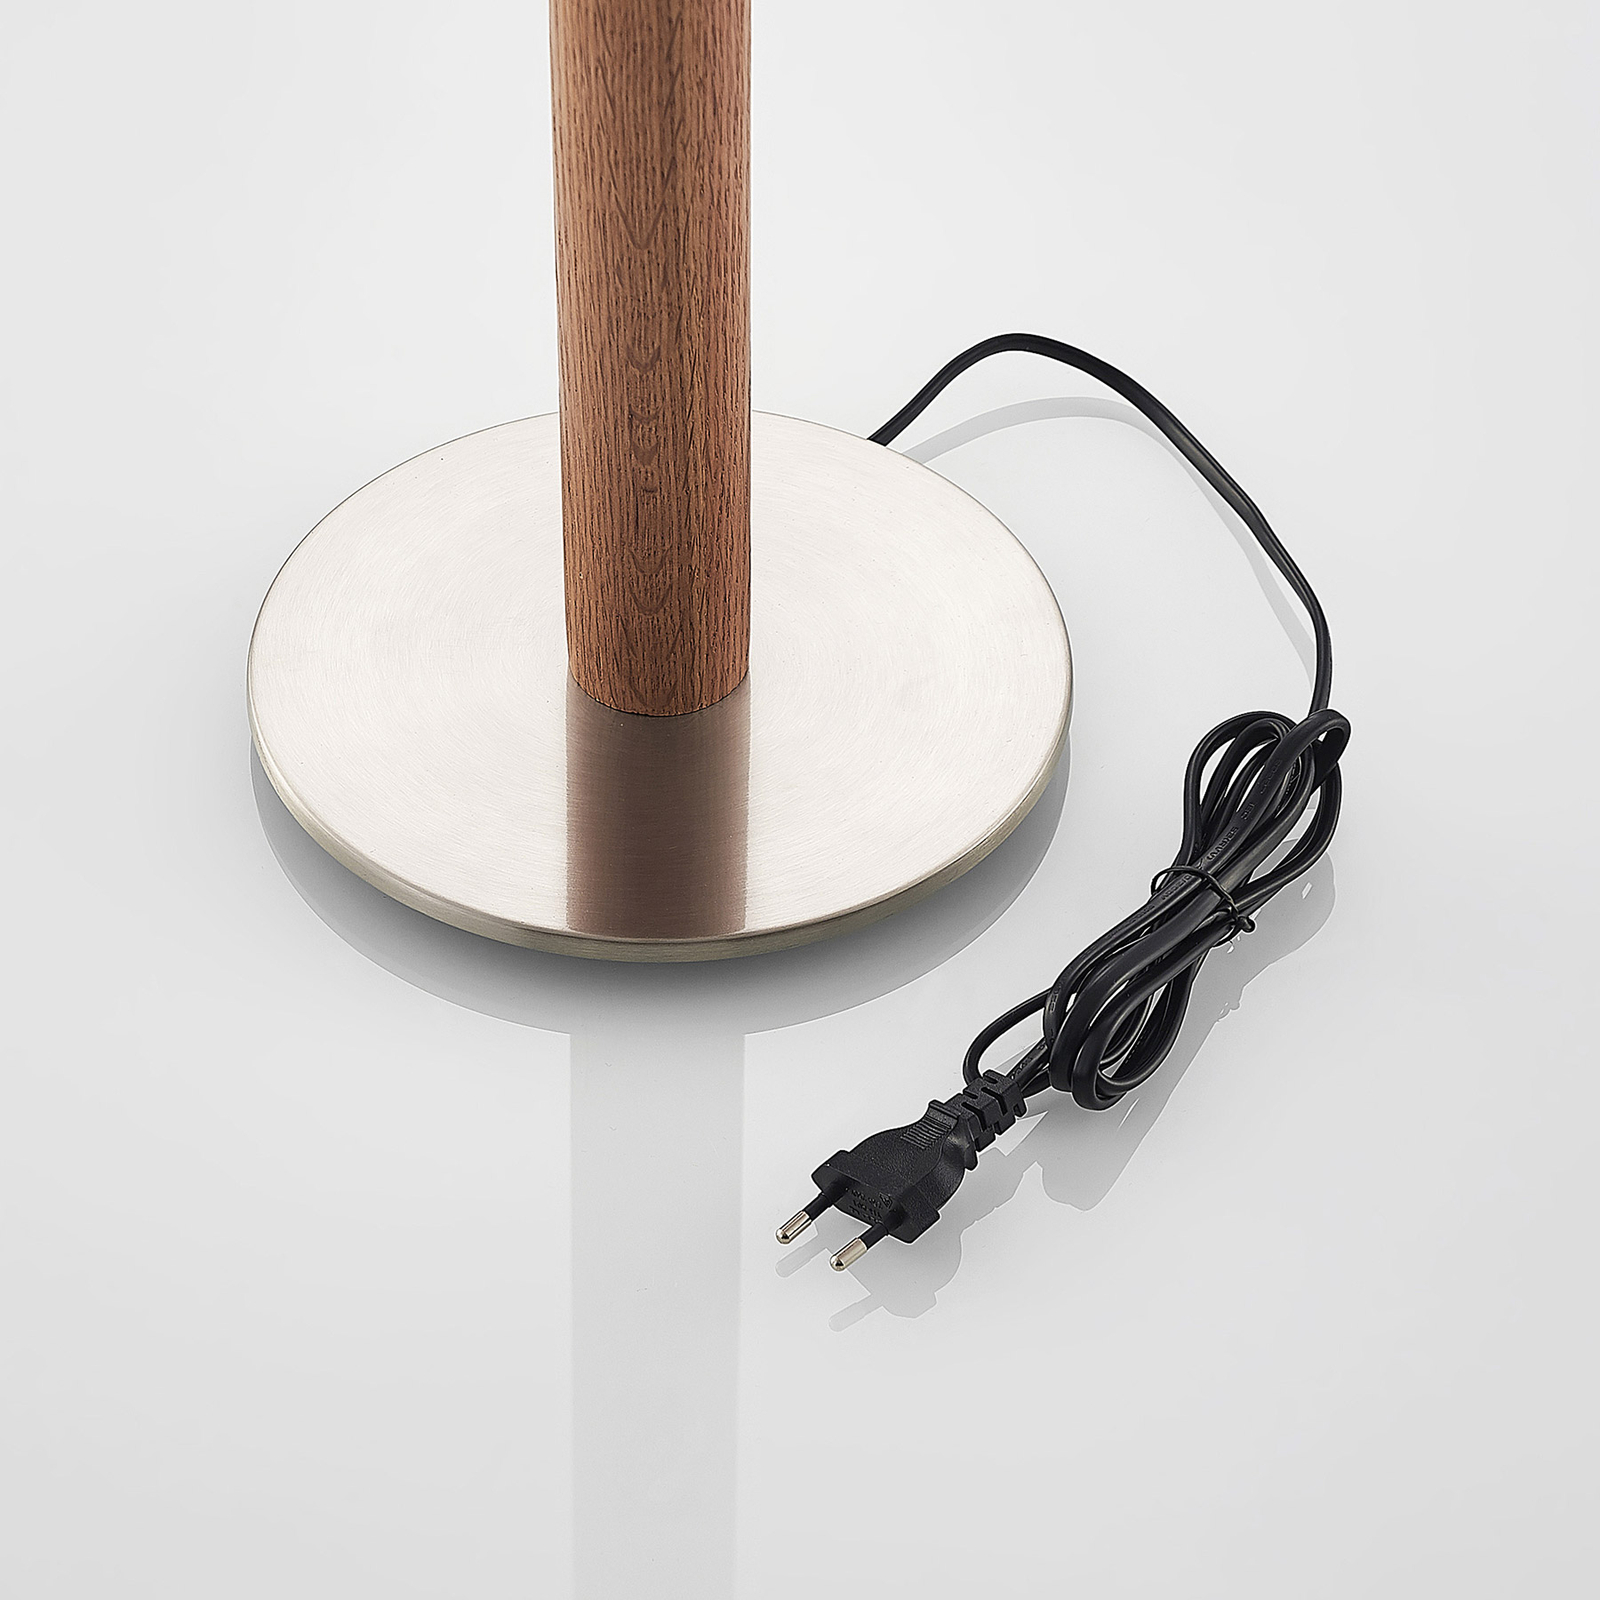 Lucande Heily lampa stołowa, cylinder, 21cm, biała